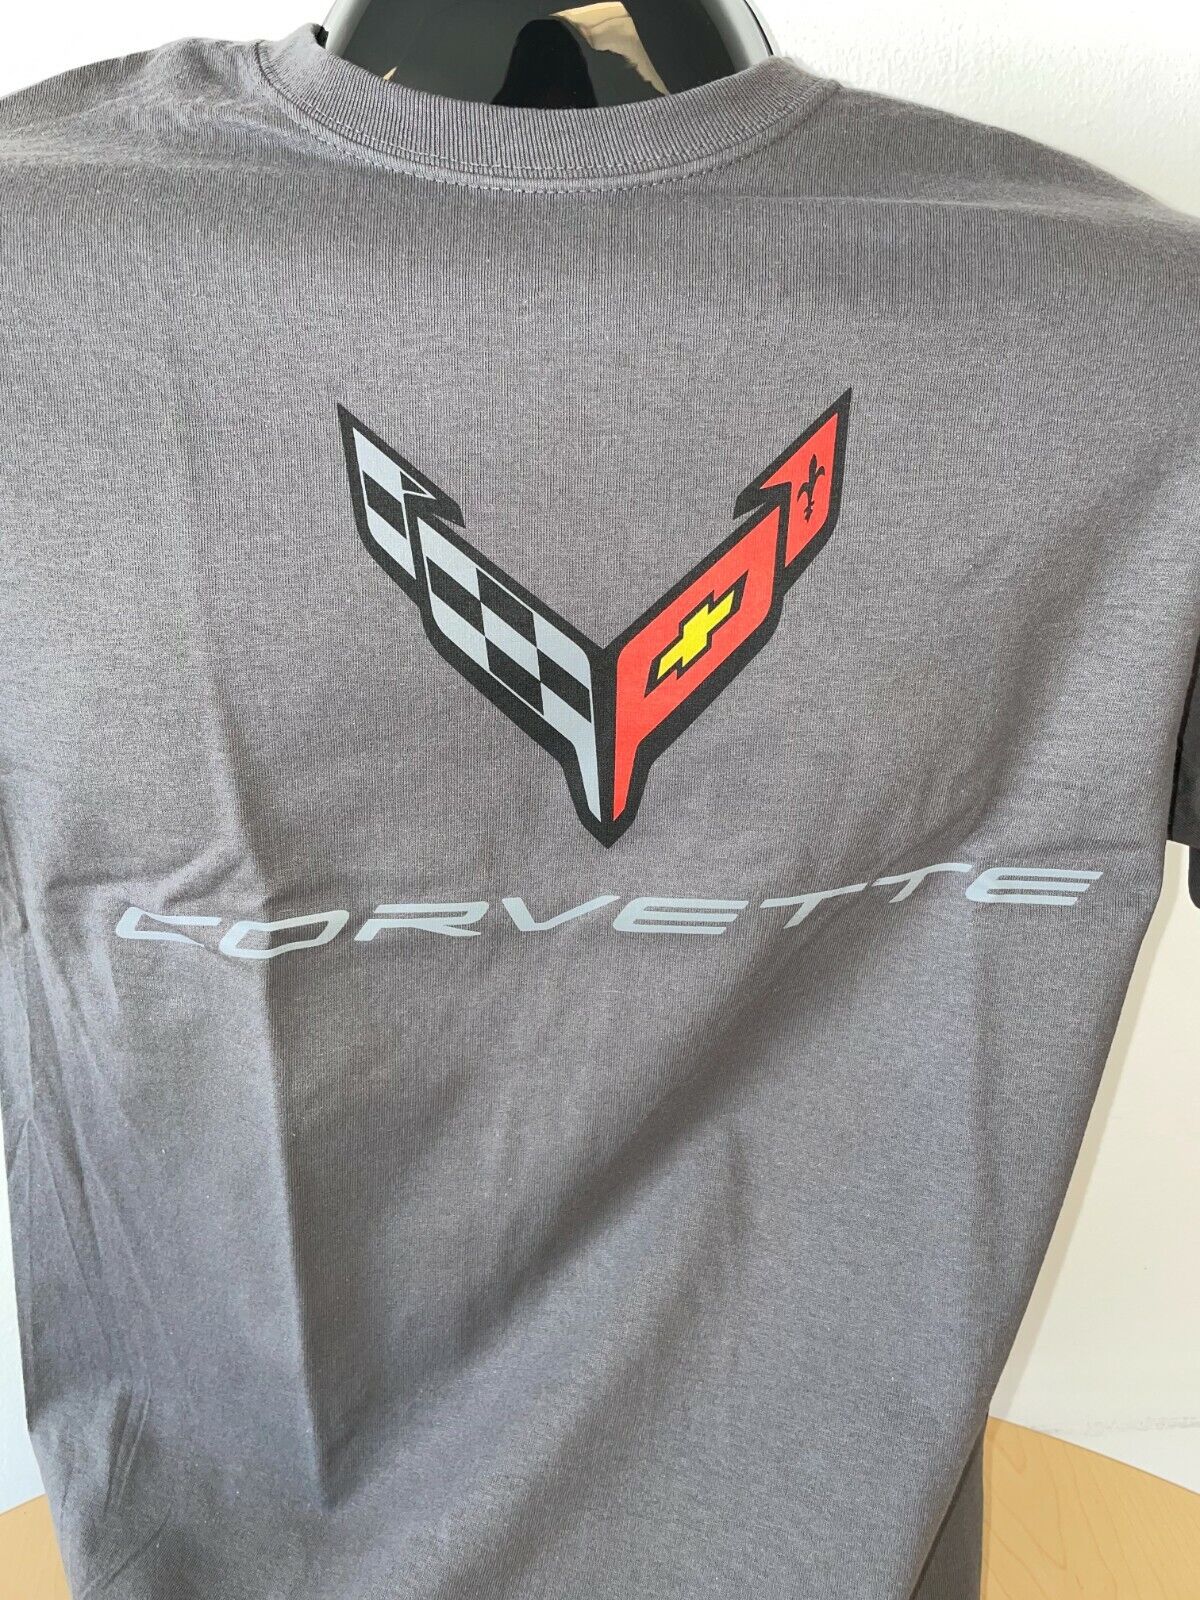 C8 Corvette Next Generation Carbon Flash T-Shirt Gray